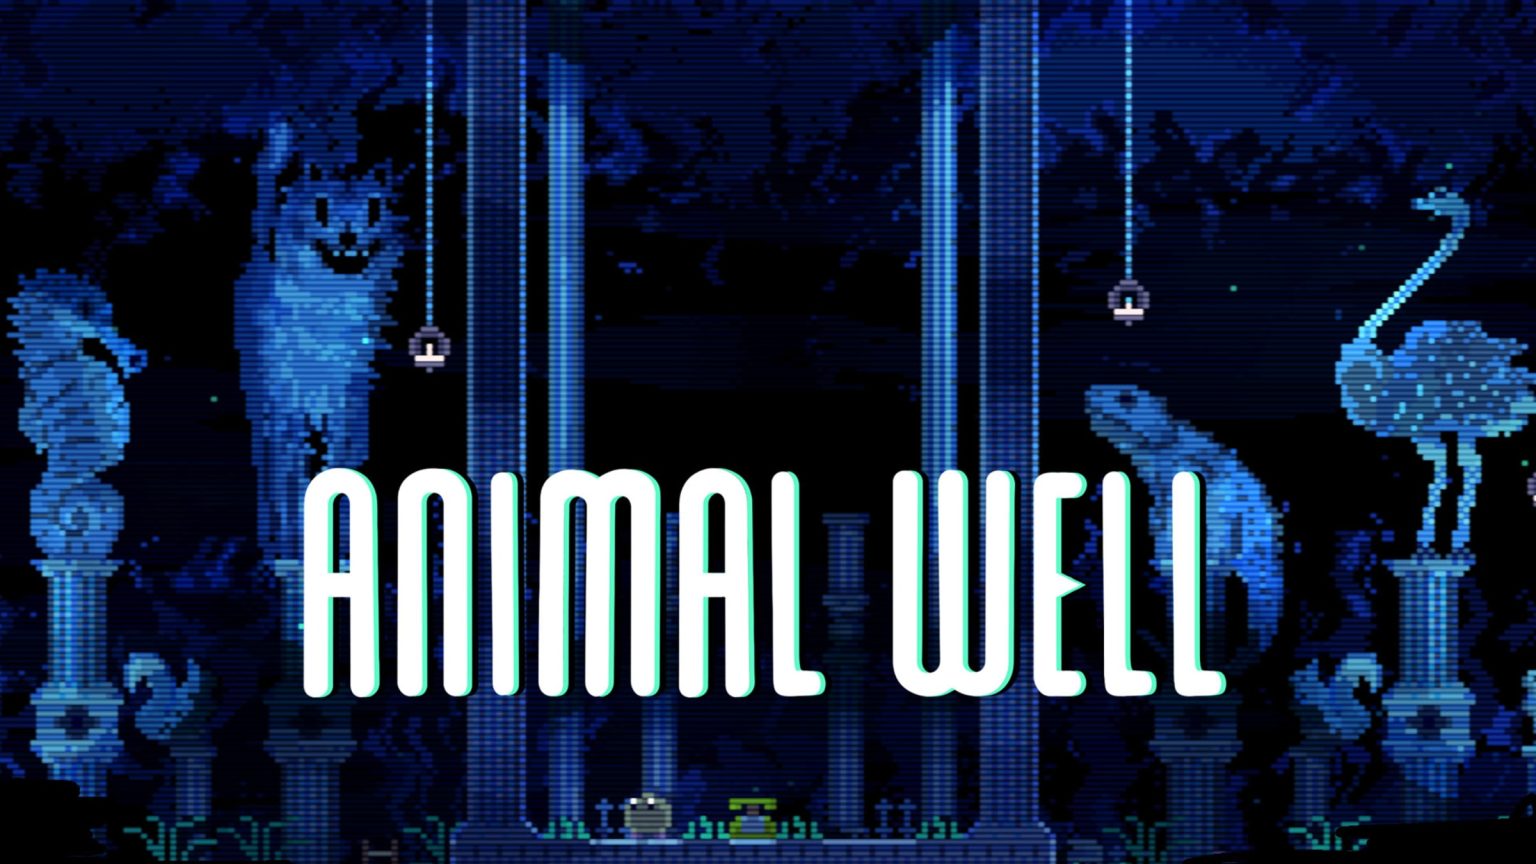 Animal Well von Billy Basso Studio ist erschienen